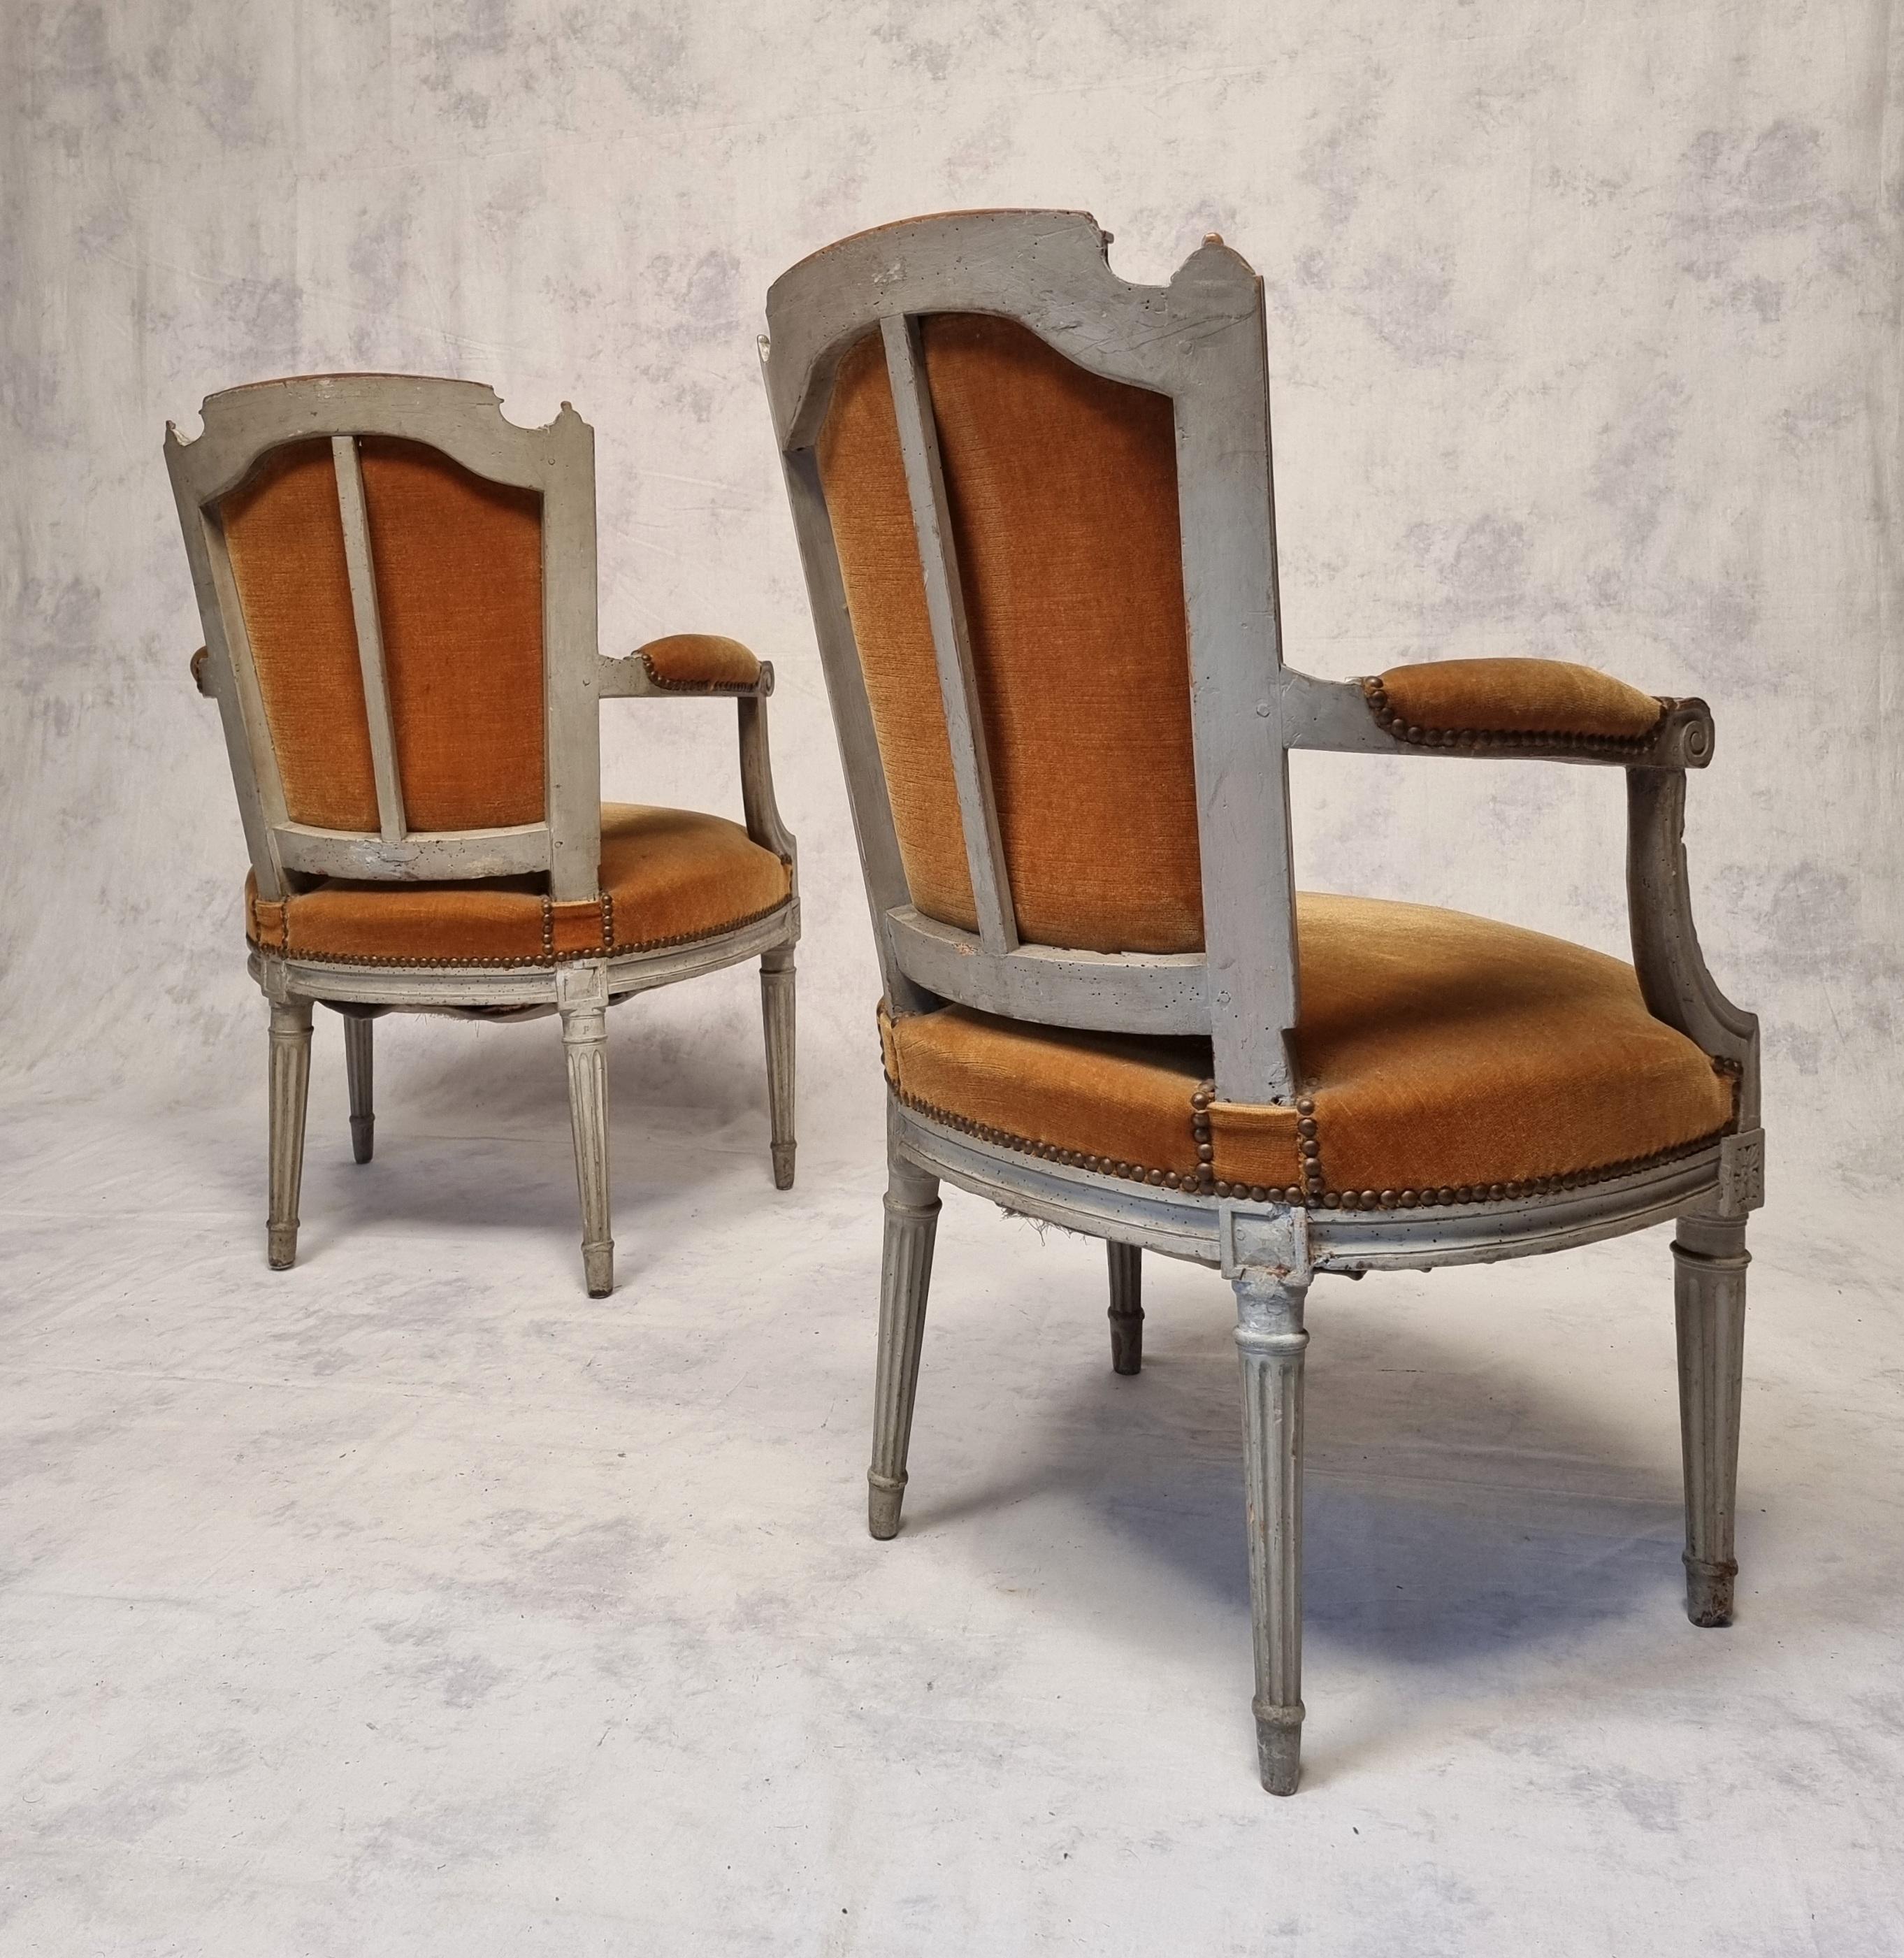 Paire de fauteuils cabriolets avec dossier en chapeau de gendarme, époque Louis XVI. Ces fauteuils sont en bois laqué d'origine. Elles datent de la fin du XVIIIe siècle, vers 1785. Ils ont de belles moulures. Les pieds sont effilés et cannelés.